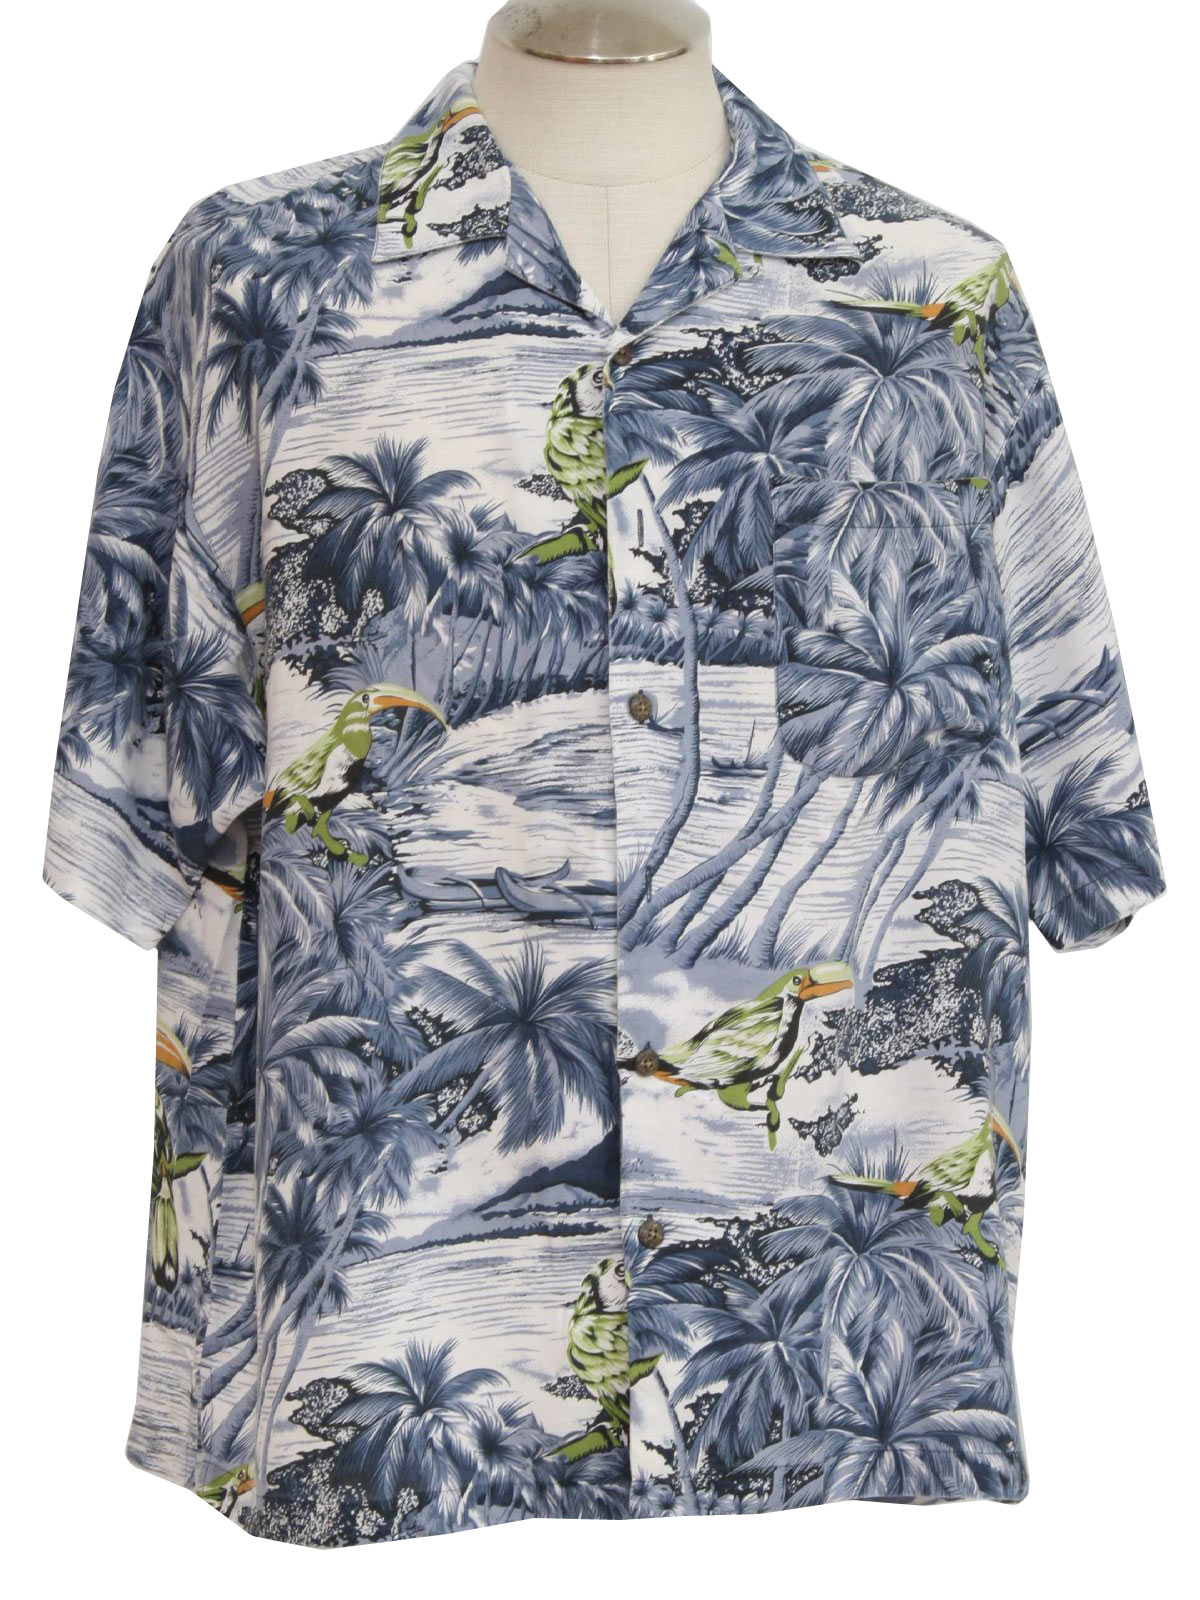 Retro 90s Hawaiian Shirt (LB) : 90s -LB- Mens white, gray, dark gray ...